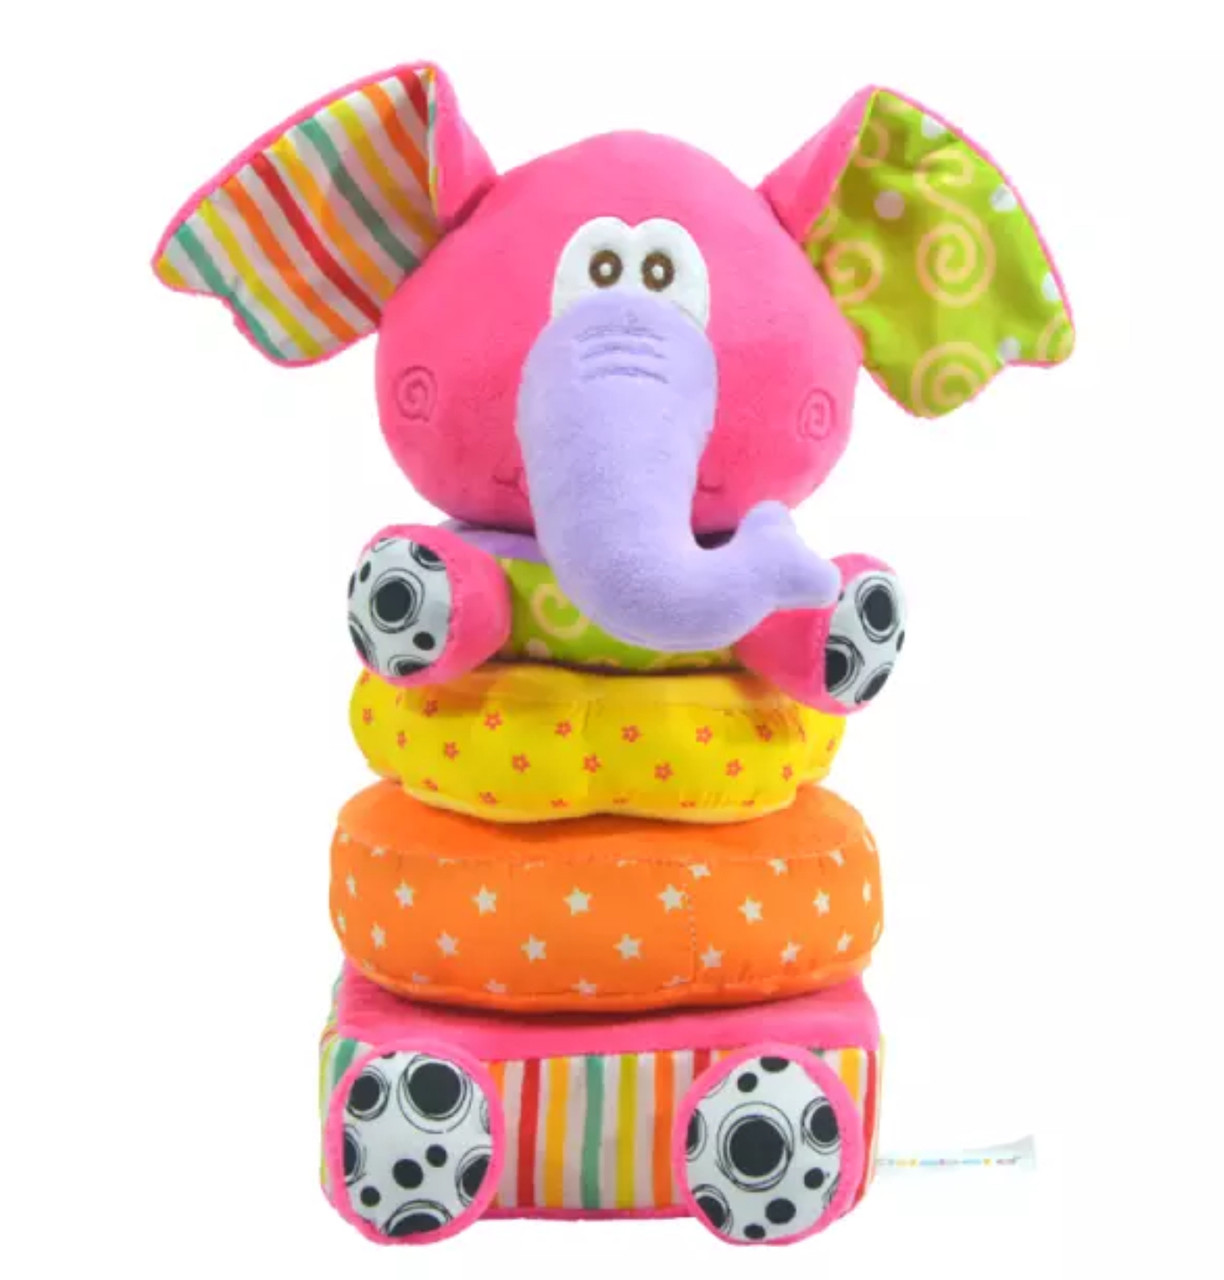 Stacking Elephant Plush Toy